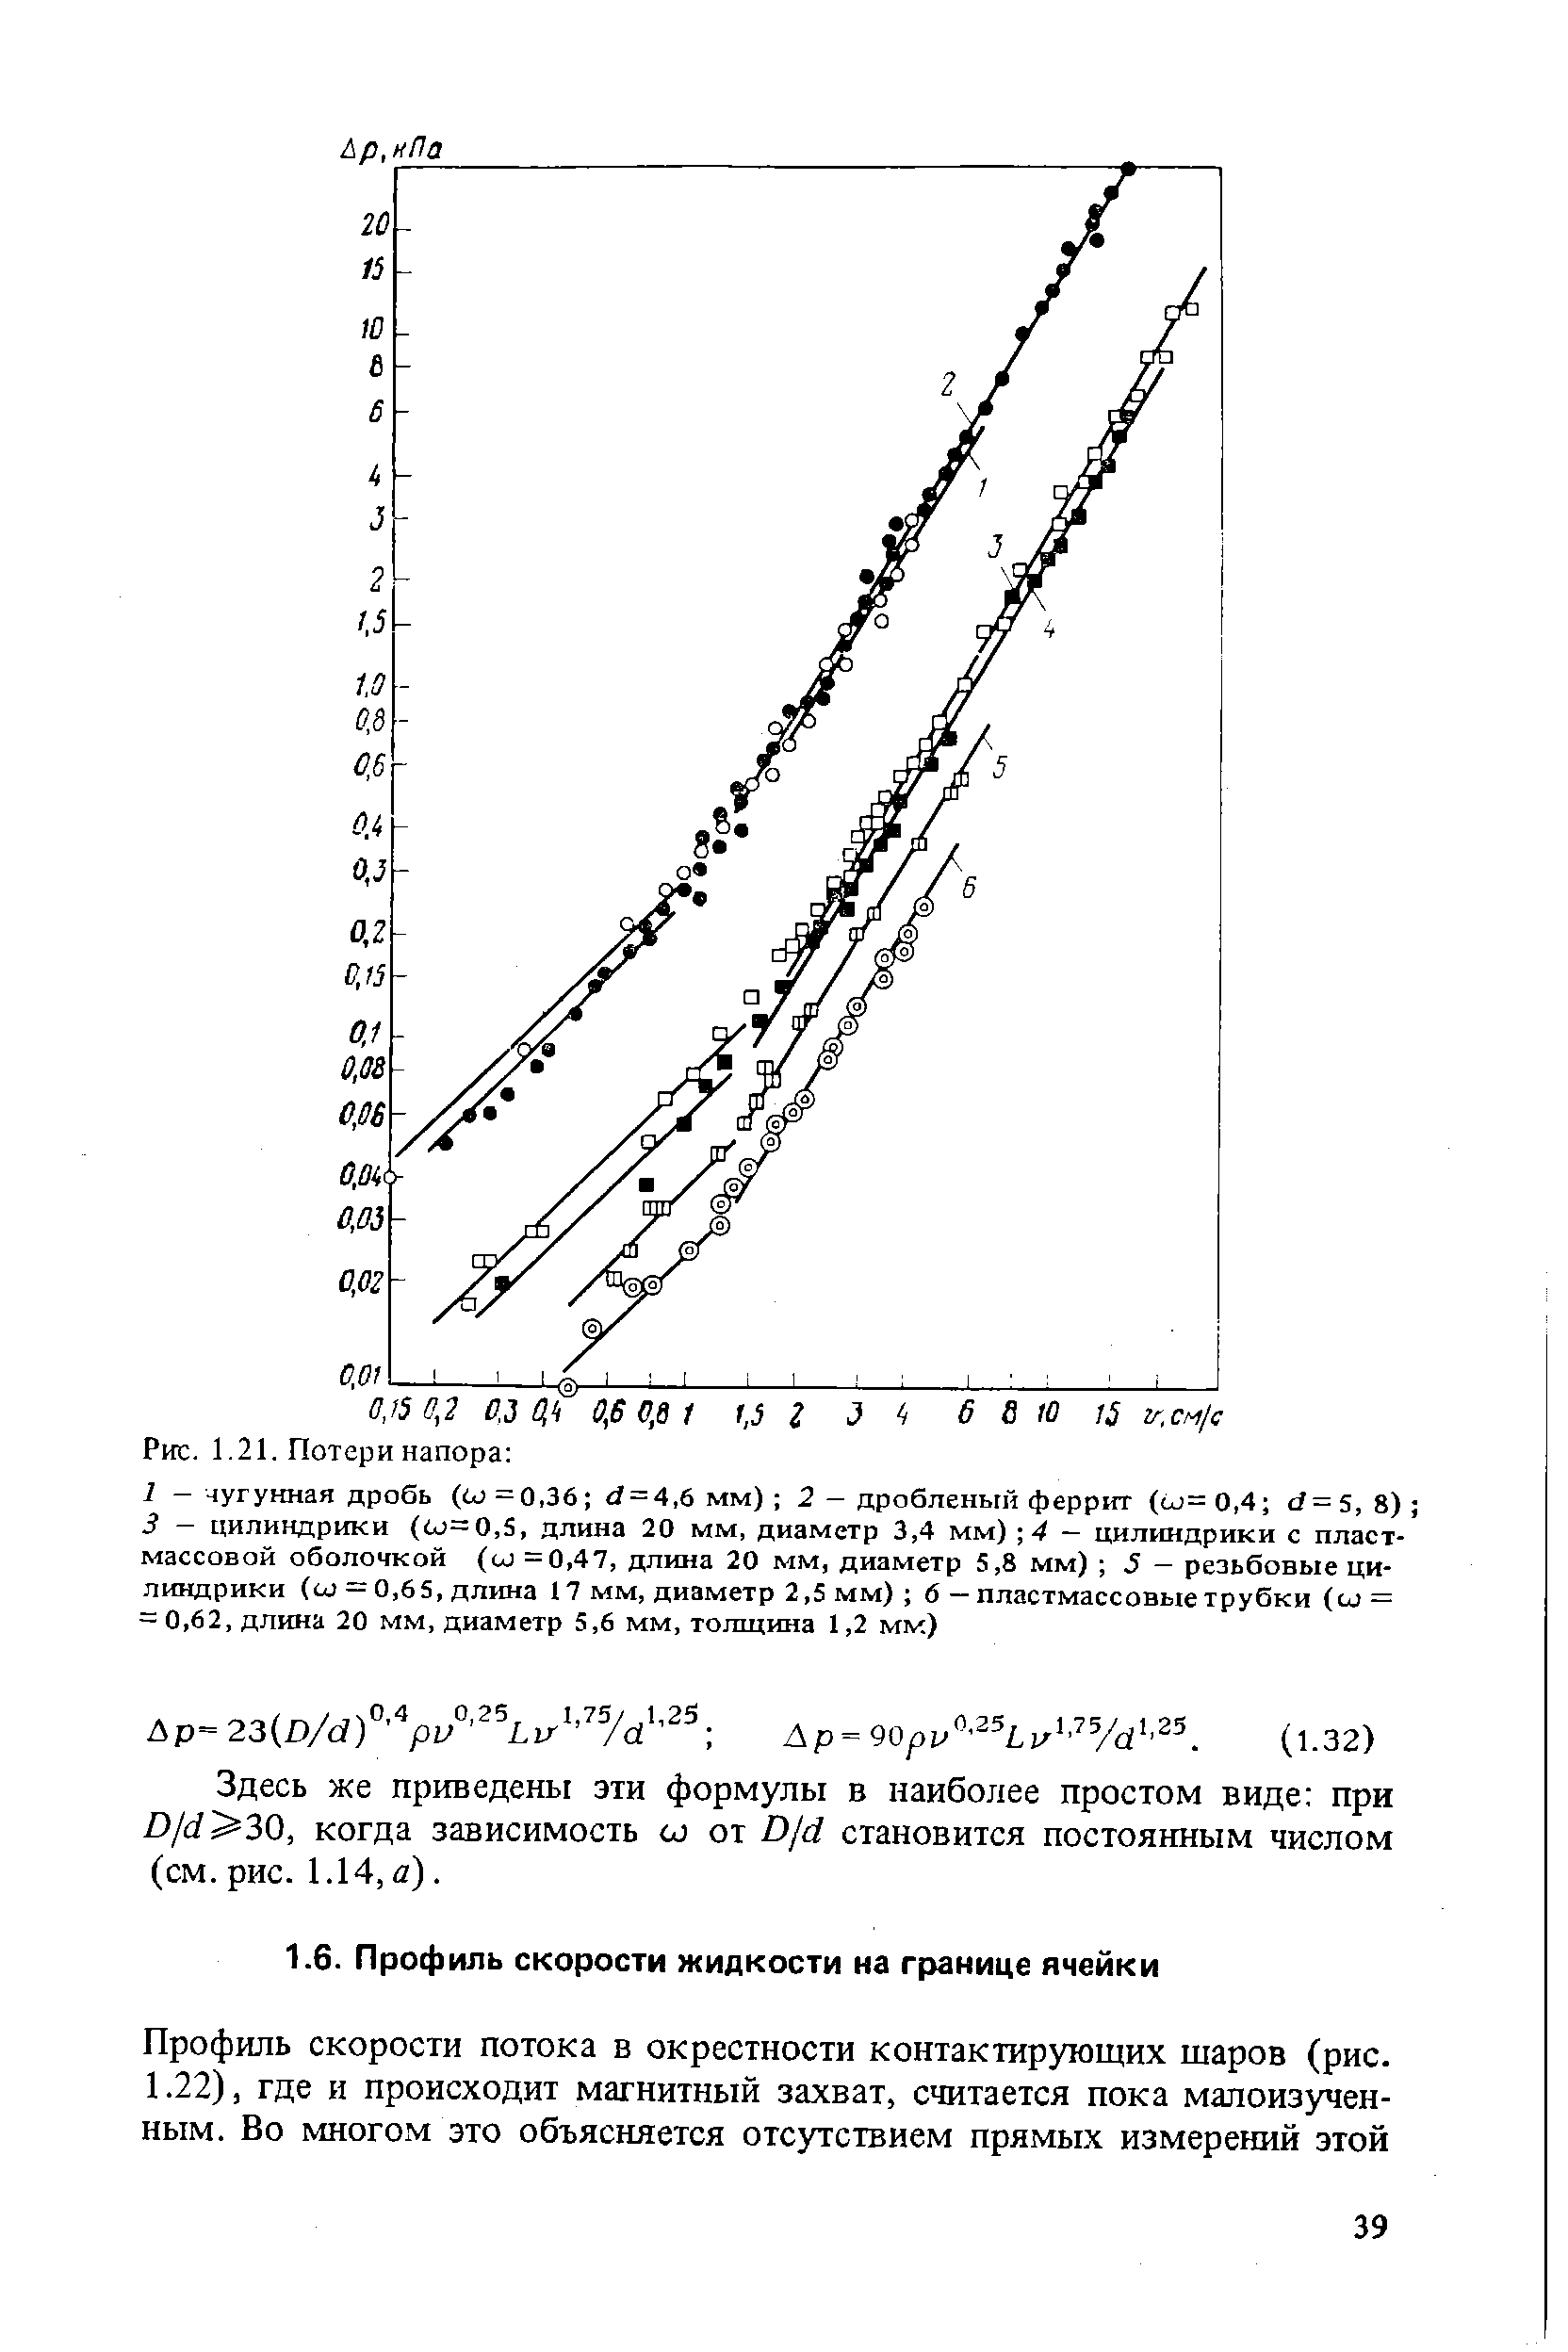 Профиль скорости потока в окрестности контактирующих шаров (рис.